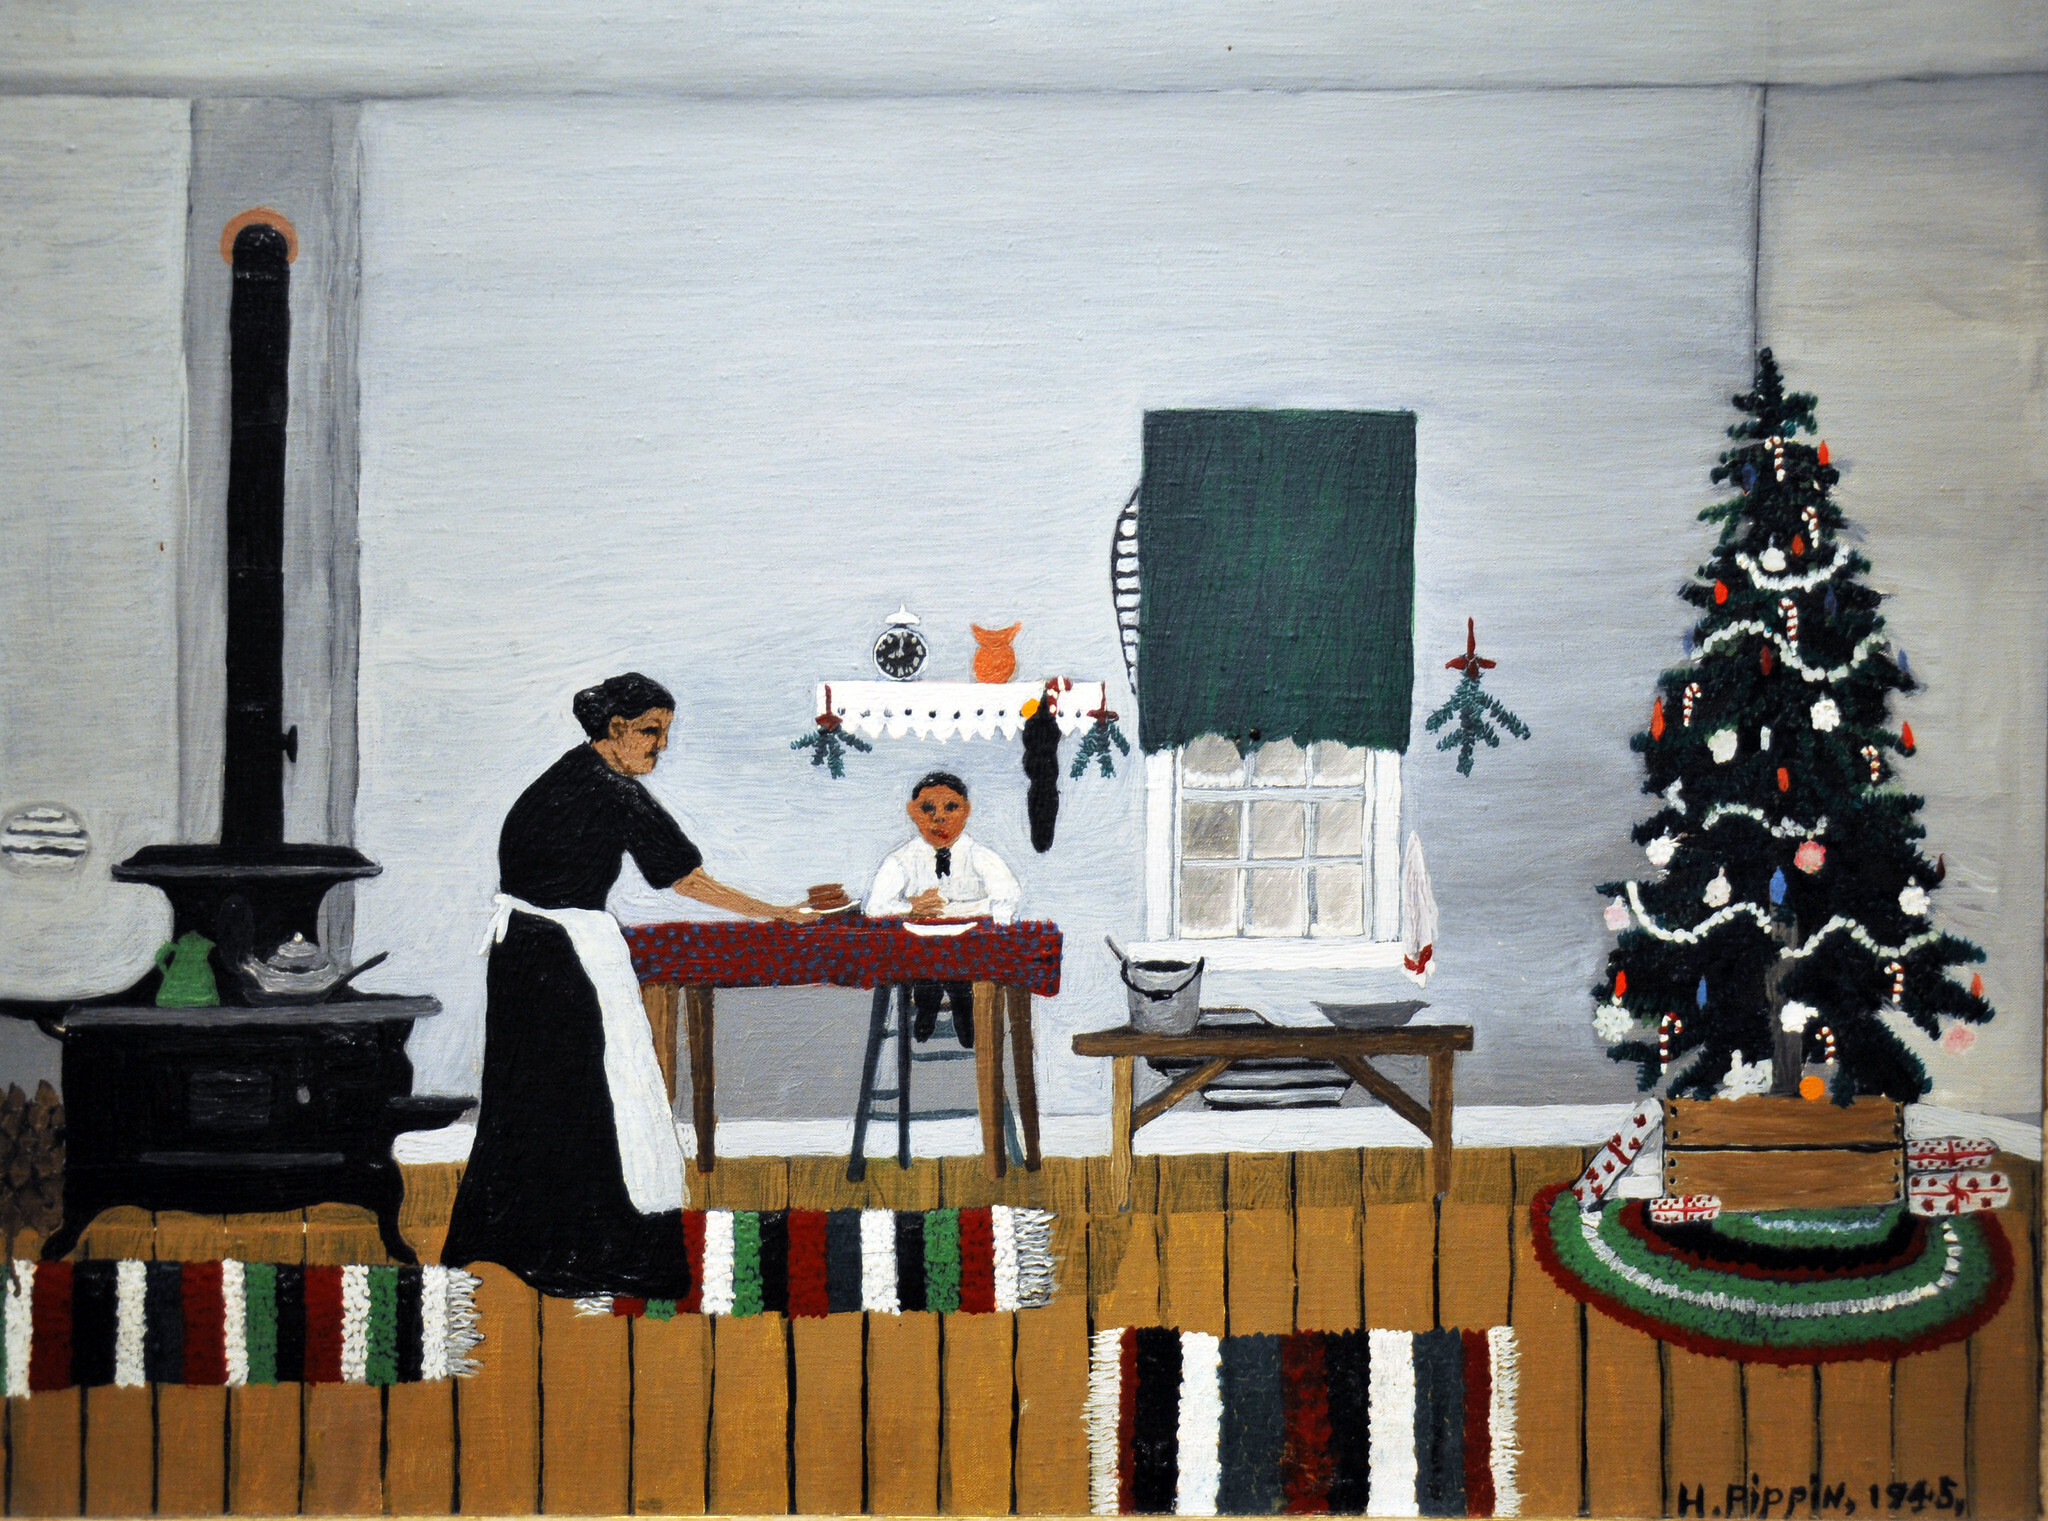 الإفطار، صباح يوم الميلاد by Horace Pippin - 1945 - الأبعاد: 66،5 × 53،6 سم 